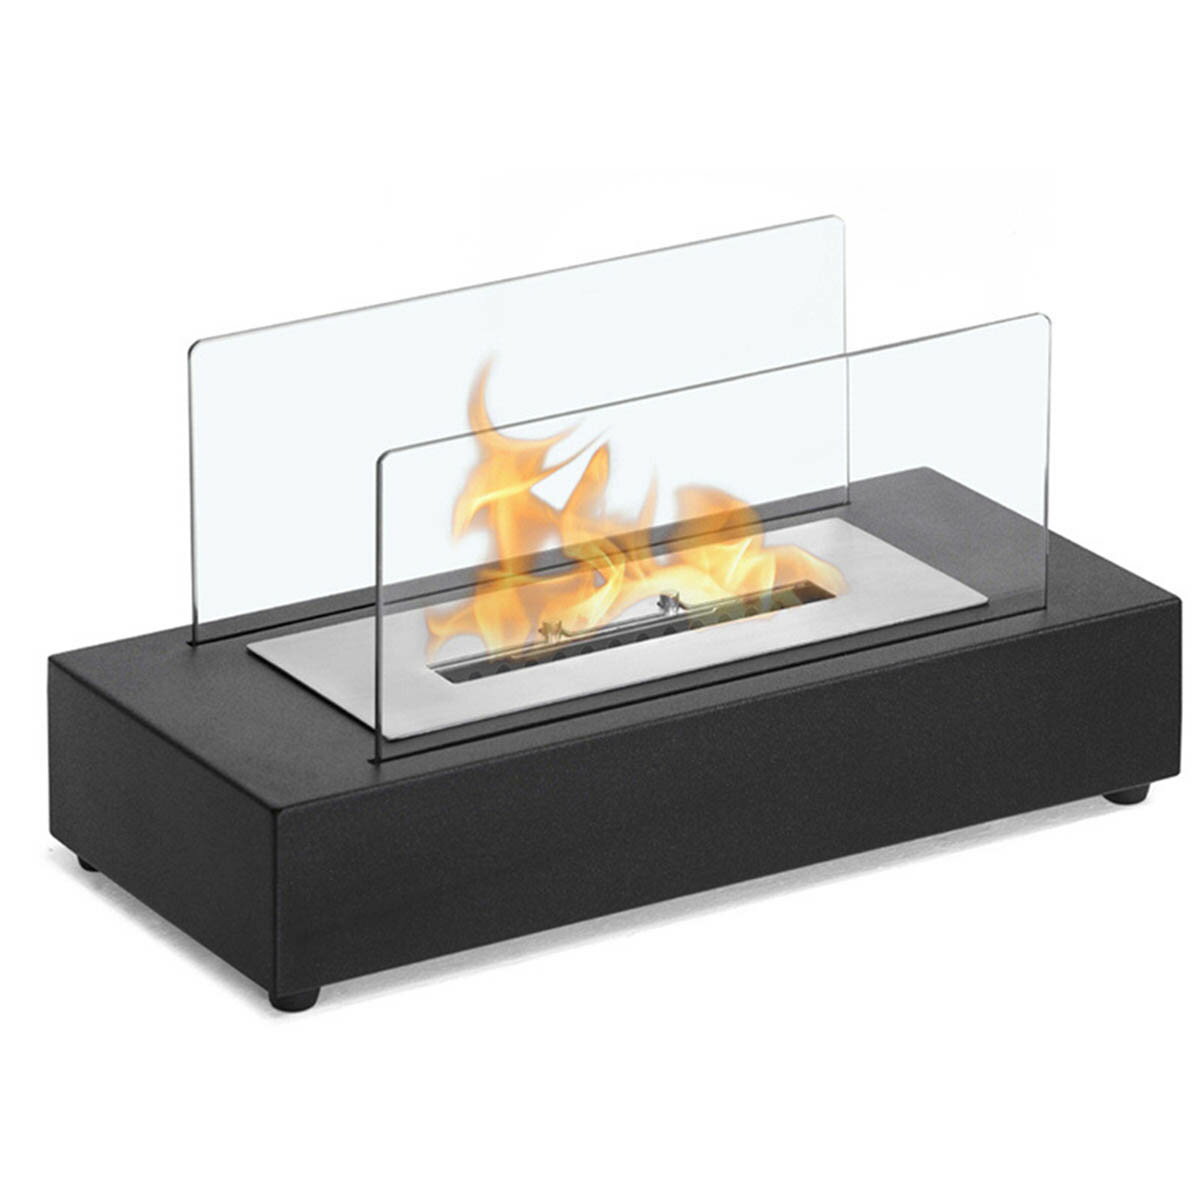 [長方形] VeroMan 卓上暖炉 バイオエタノール暖炉 ウィンドガード付 暖炉 卓上型 グラスファイヤー インドア 安全 耐風 無煙 屋外 インテリア パーティー 1